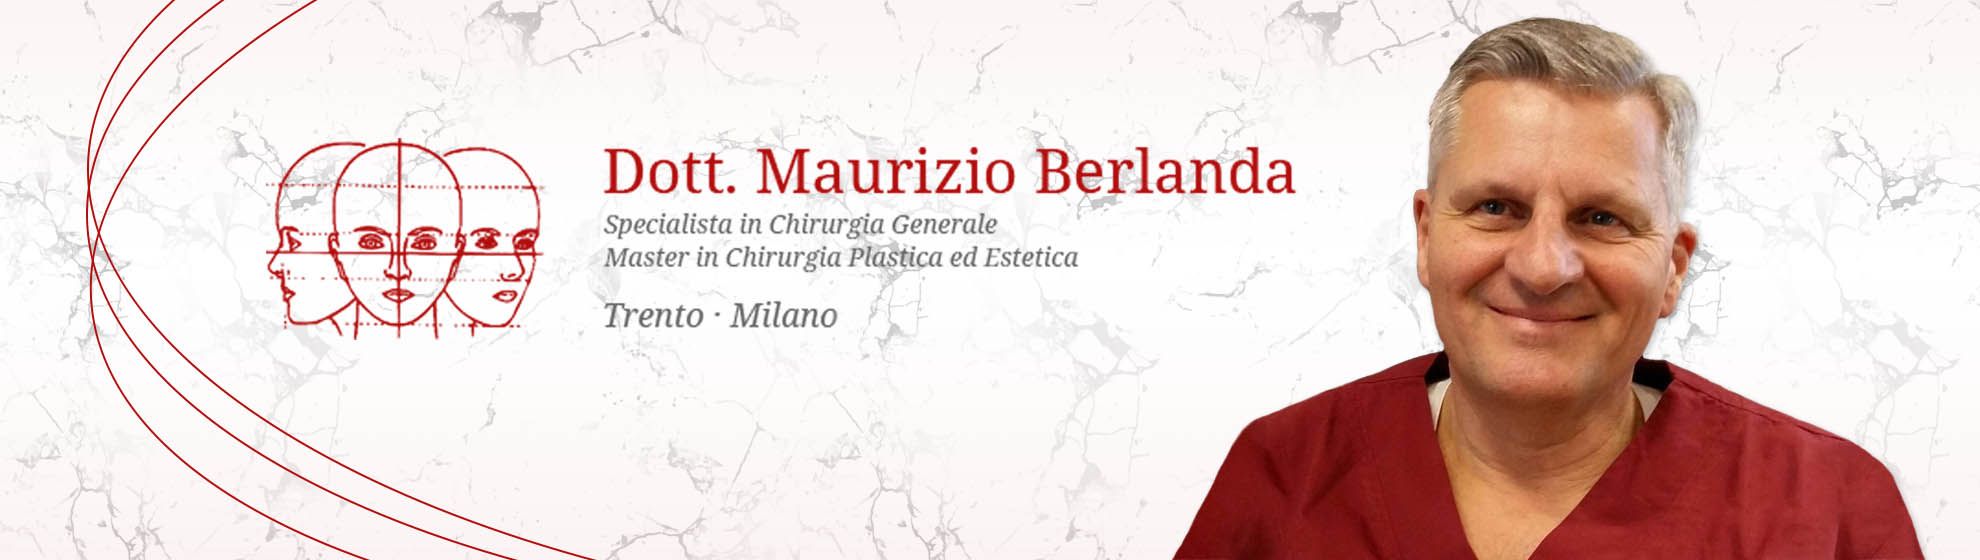 Dott. Maurizio Berlanda